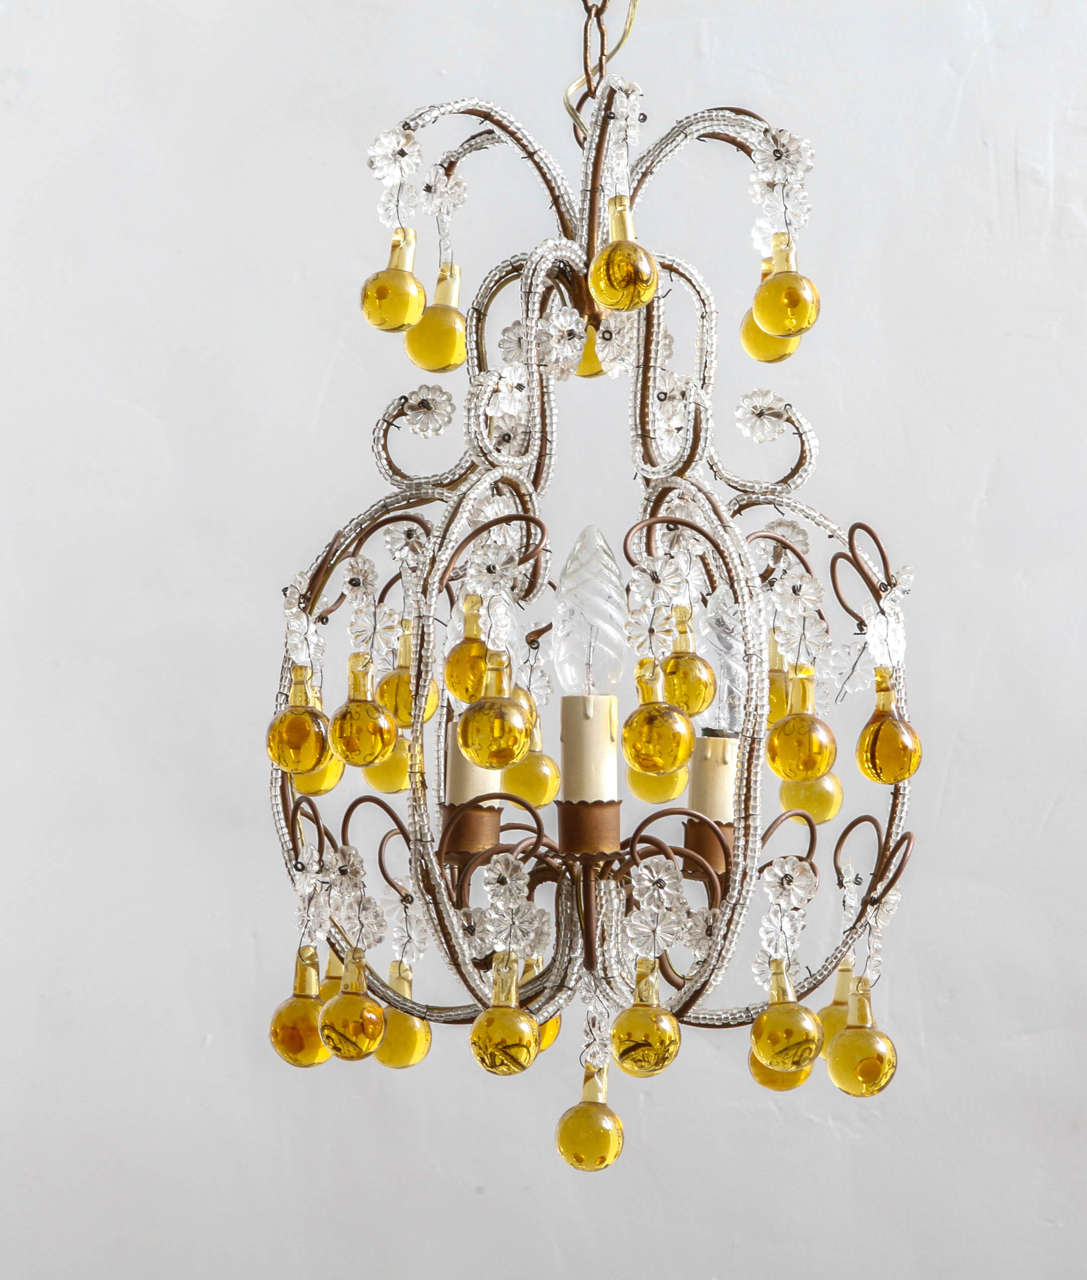 Französischer Kronleuchter aus Messing und Kristall, ca. 1920er Jahre. Perlenförmige Gläser aus klarem Kristall und Blumen am Messingrahmen mit großen gelben Tränen.